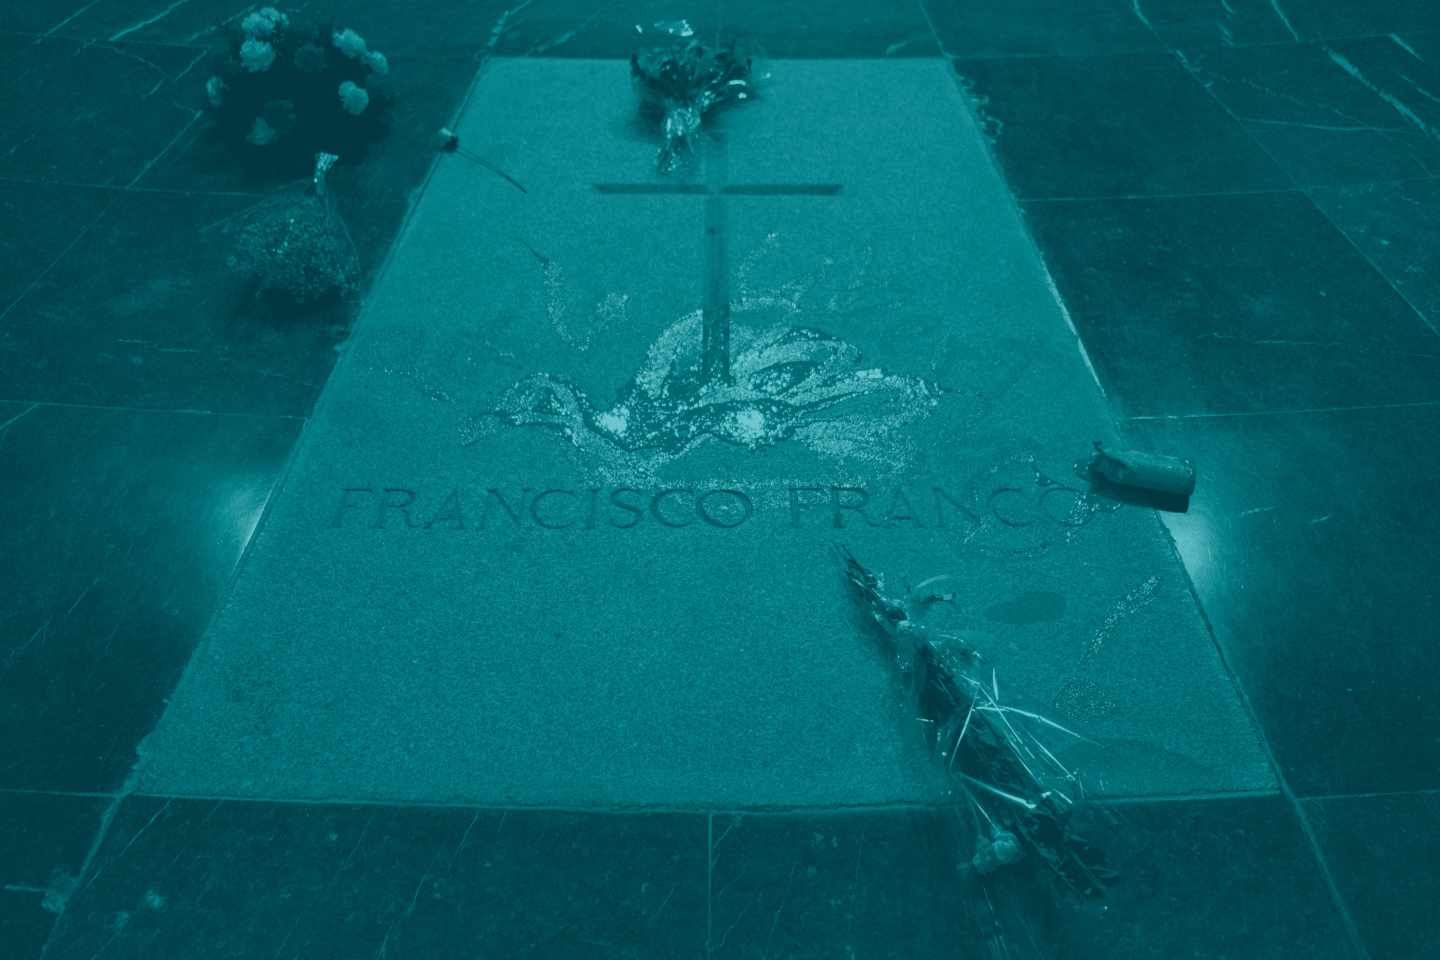 La tumba de Franco tras la intervención de Enrique Tenreiro.